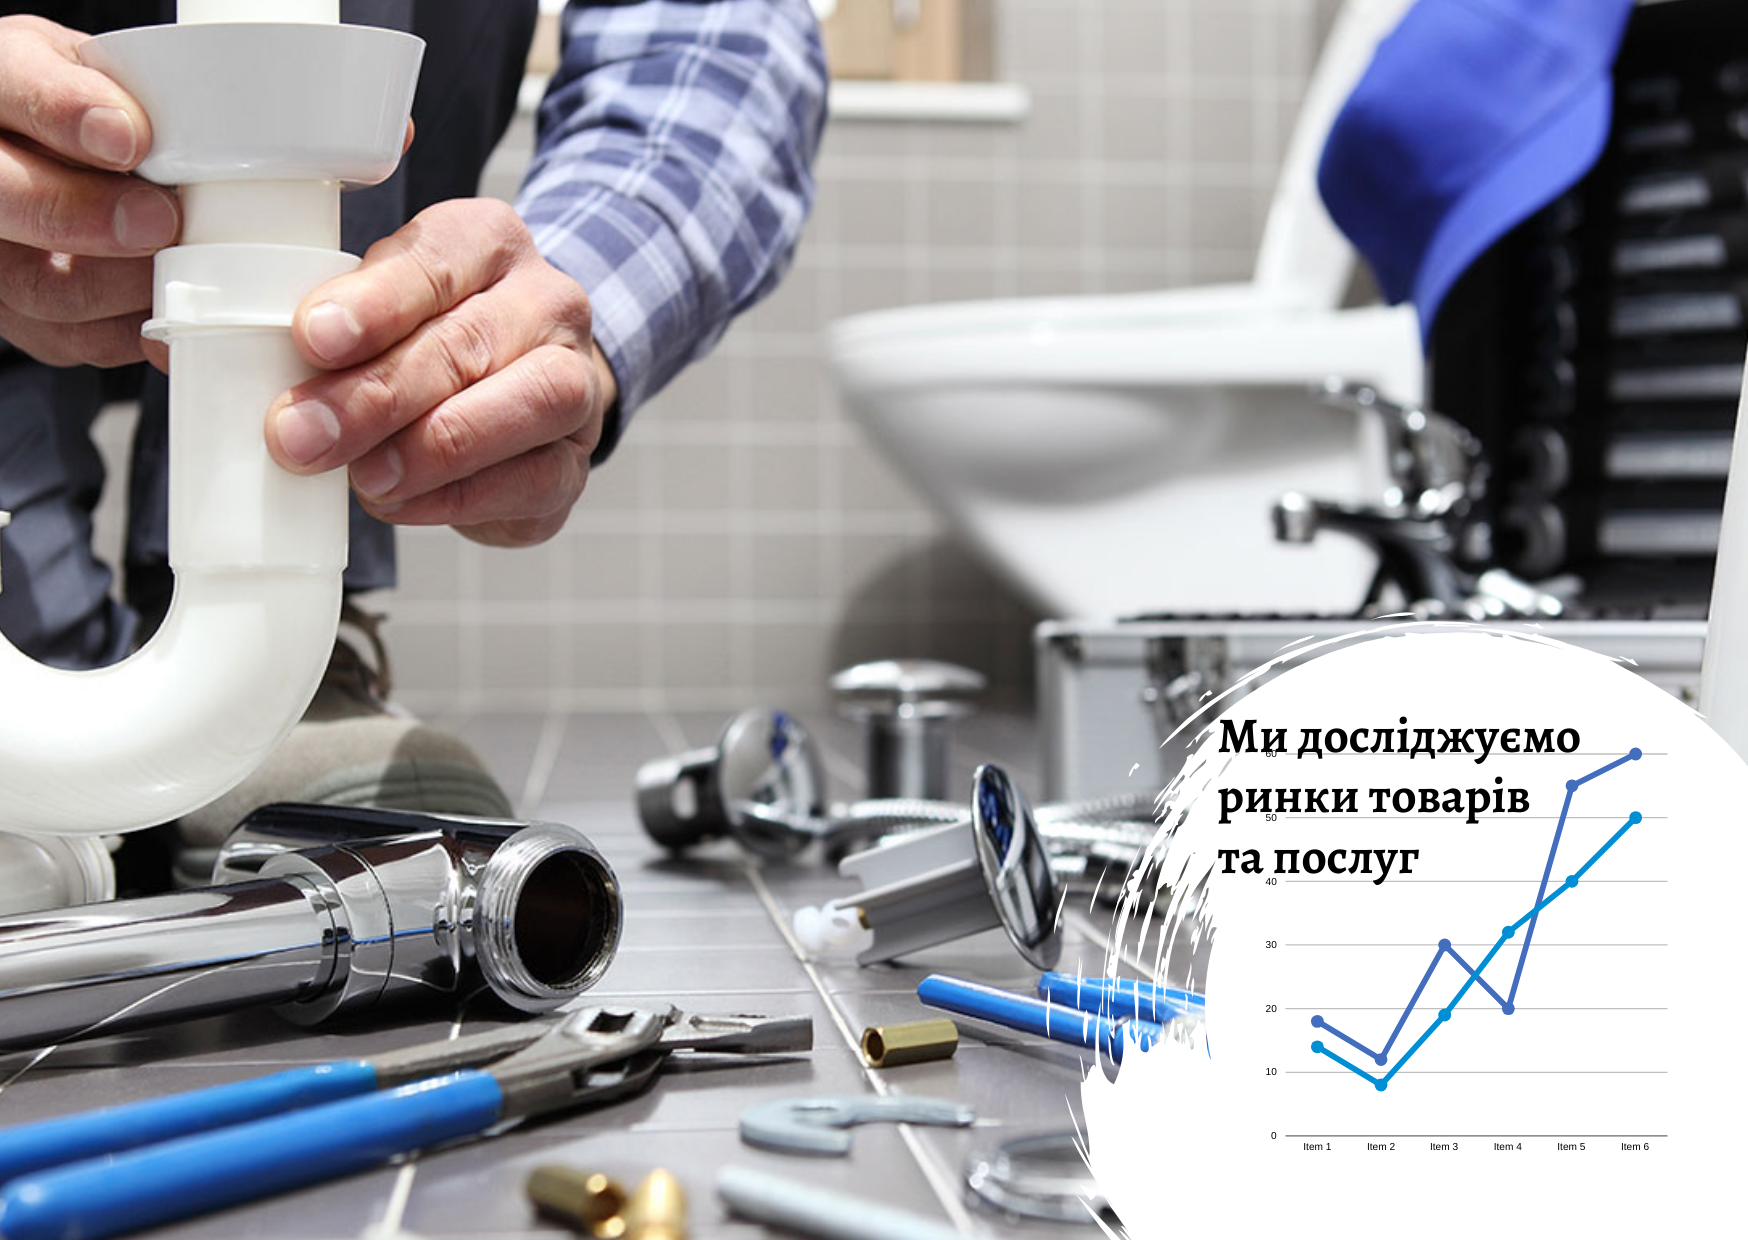 Ринок сантехніки в Україні: 10 найбільших операторів забезпечують не більше 50% ємності ринку